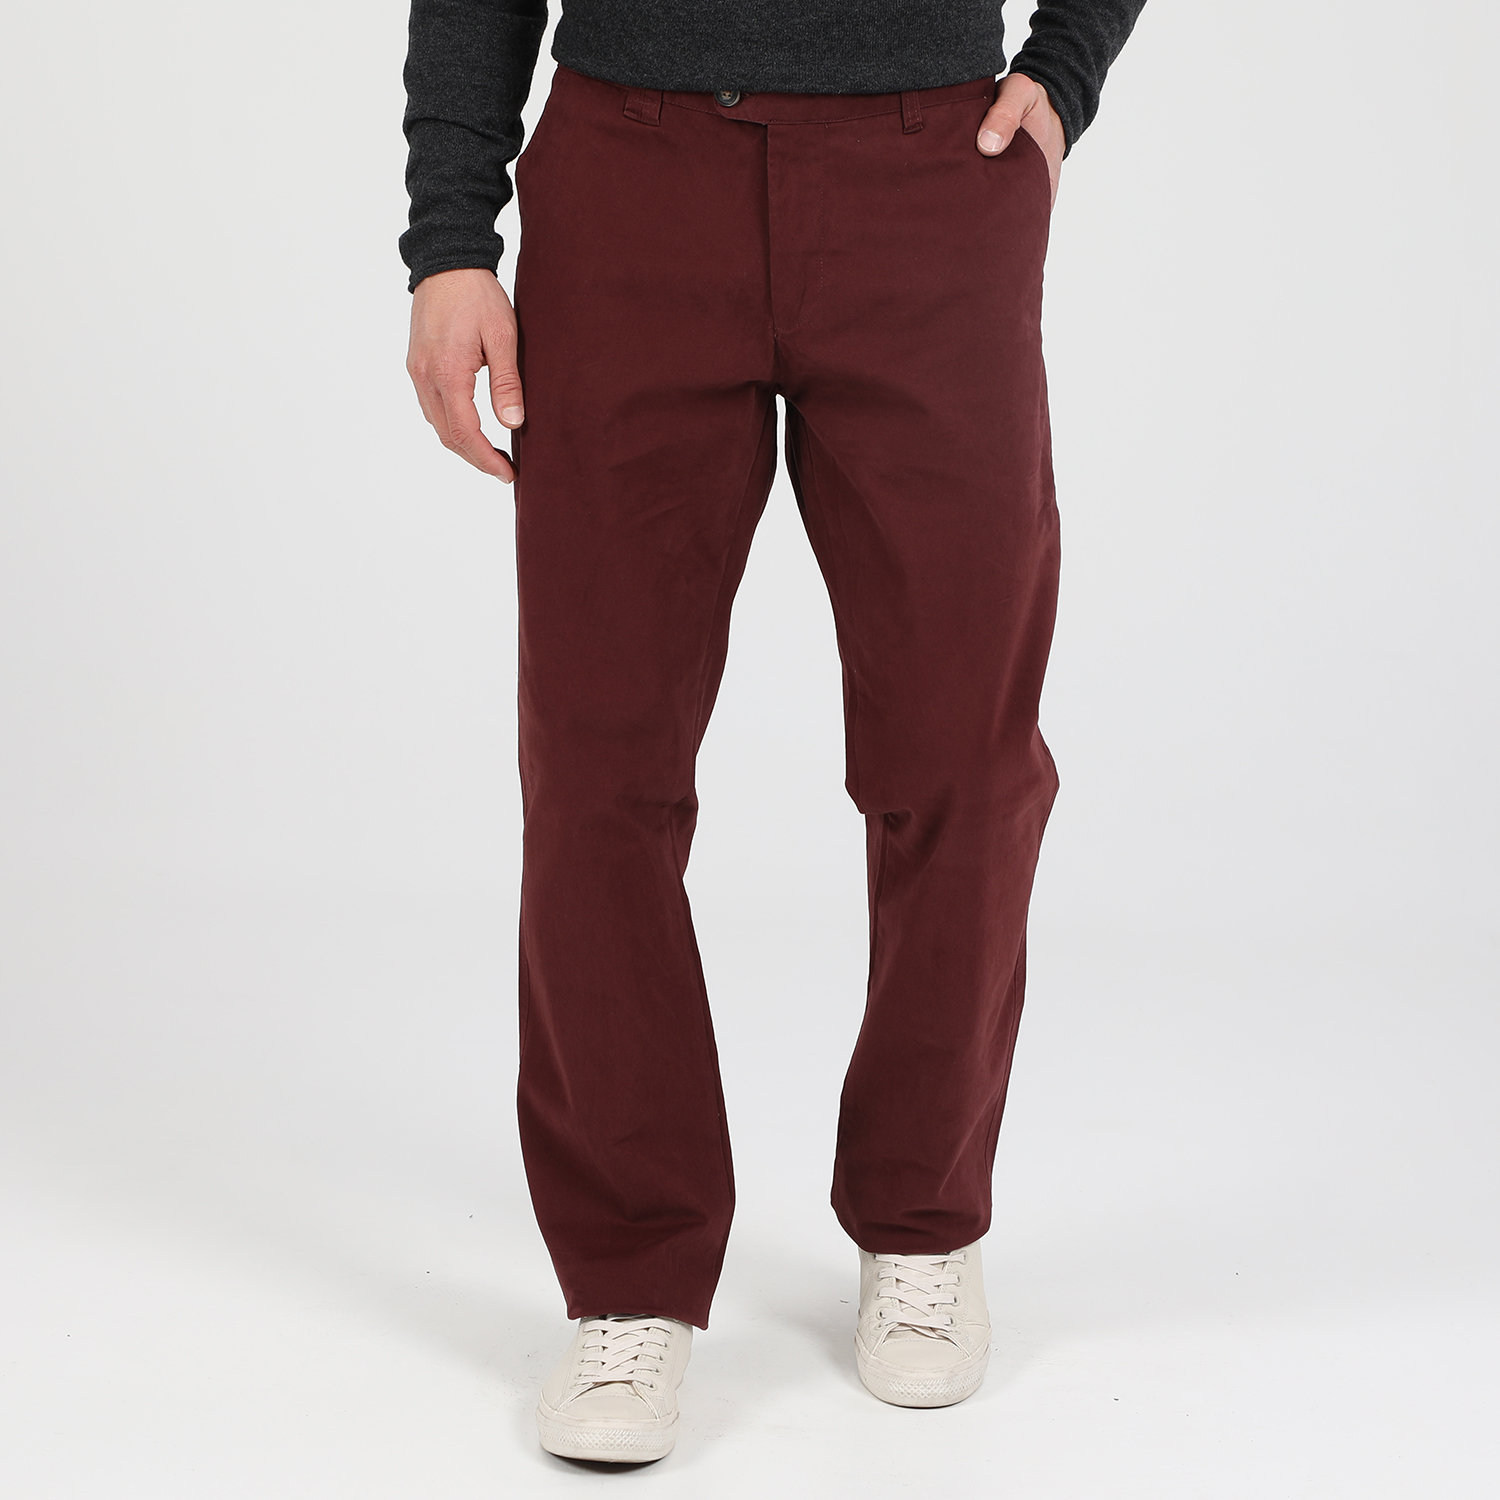 Ανδρικά/Ρούχα/Παντελόνια/Chinos MARTIN & CO - Ανδρικό παντελόνι MARTIN & CO SLIM CHINOS μπορντό